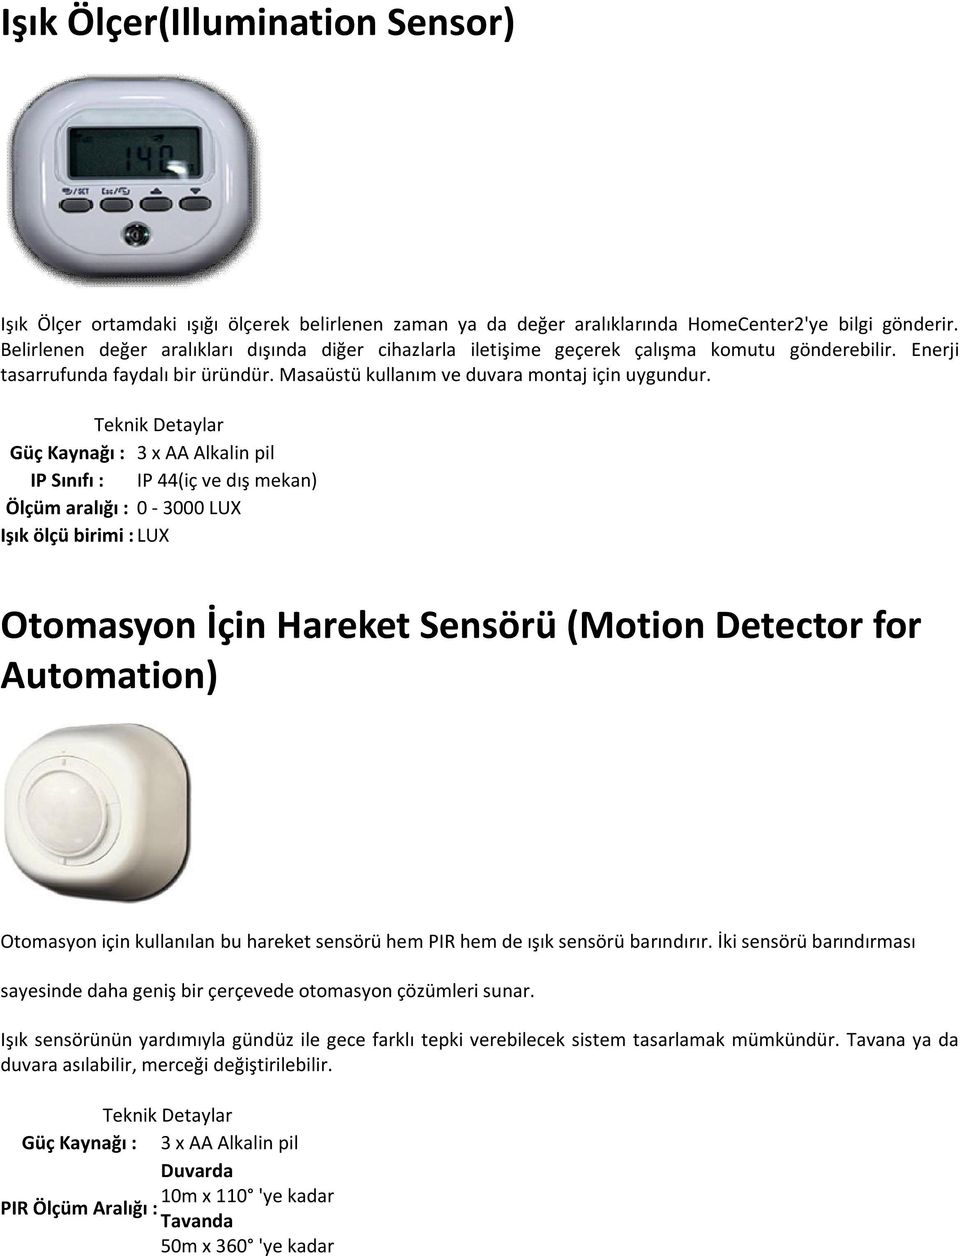 Güç Kaynağı : 3 x AA Alkalin pil IP Sınıfı : IP 44(iç ve dış mekan) Ölçüm aralığı : 0-3000 LUX Işık ölçü birimi : LUX Otomasyon İçin Hareket Sensörü (Motion Detector for Automation) Otomasyon için